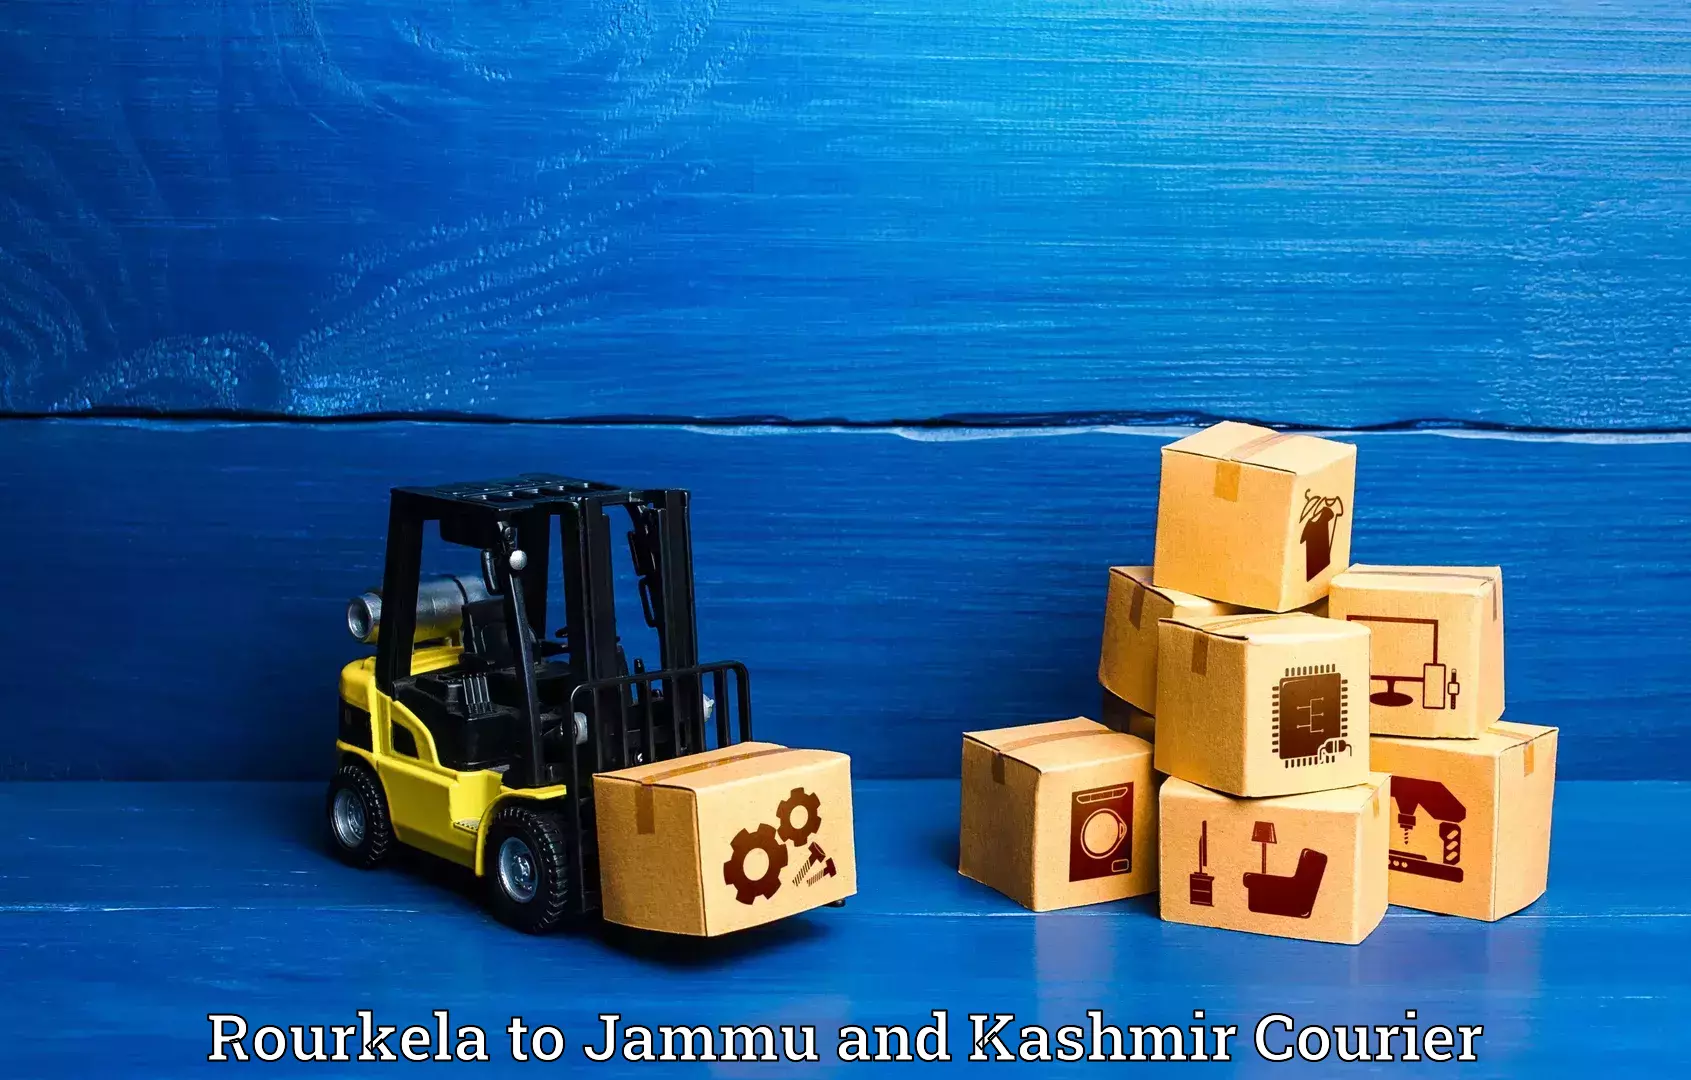 Urgent luggage shipment Rourkela to University of Jammu